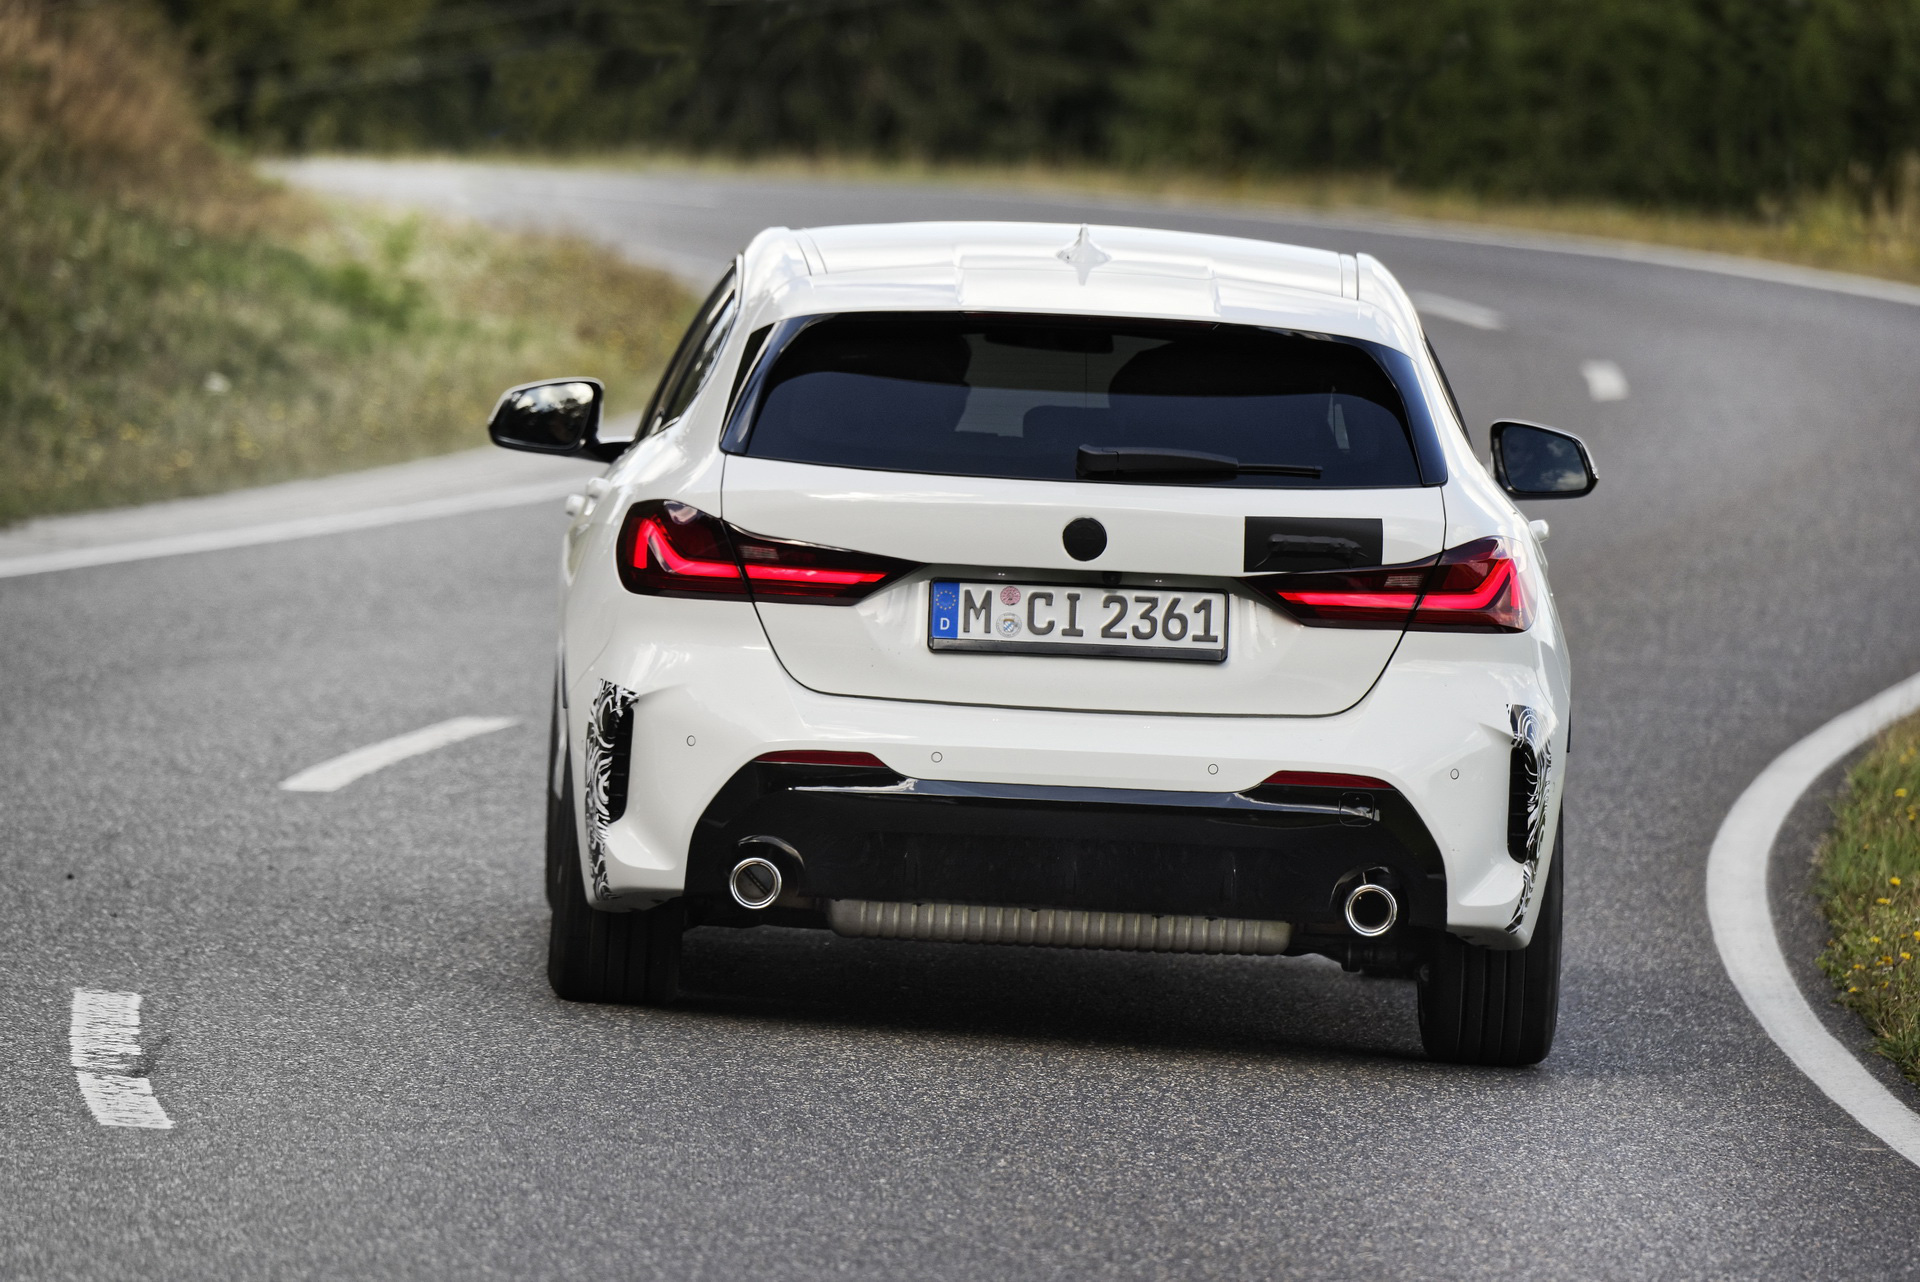 BMW sắp ra mắt xe nhỏ cạnh tranh Honda Civic, đánh thẳng vào phân khúc phổ thông - Ảnh 3.